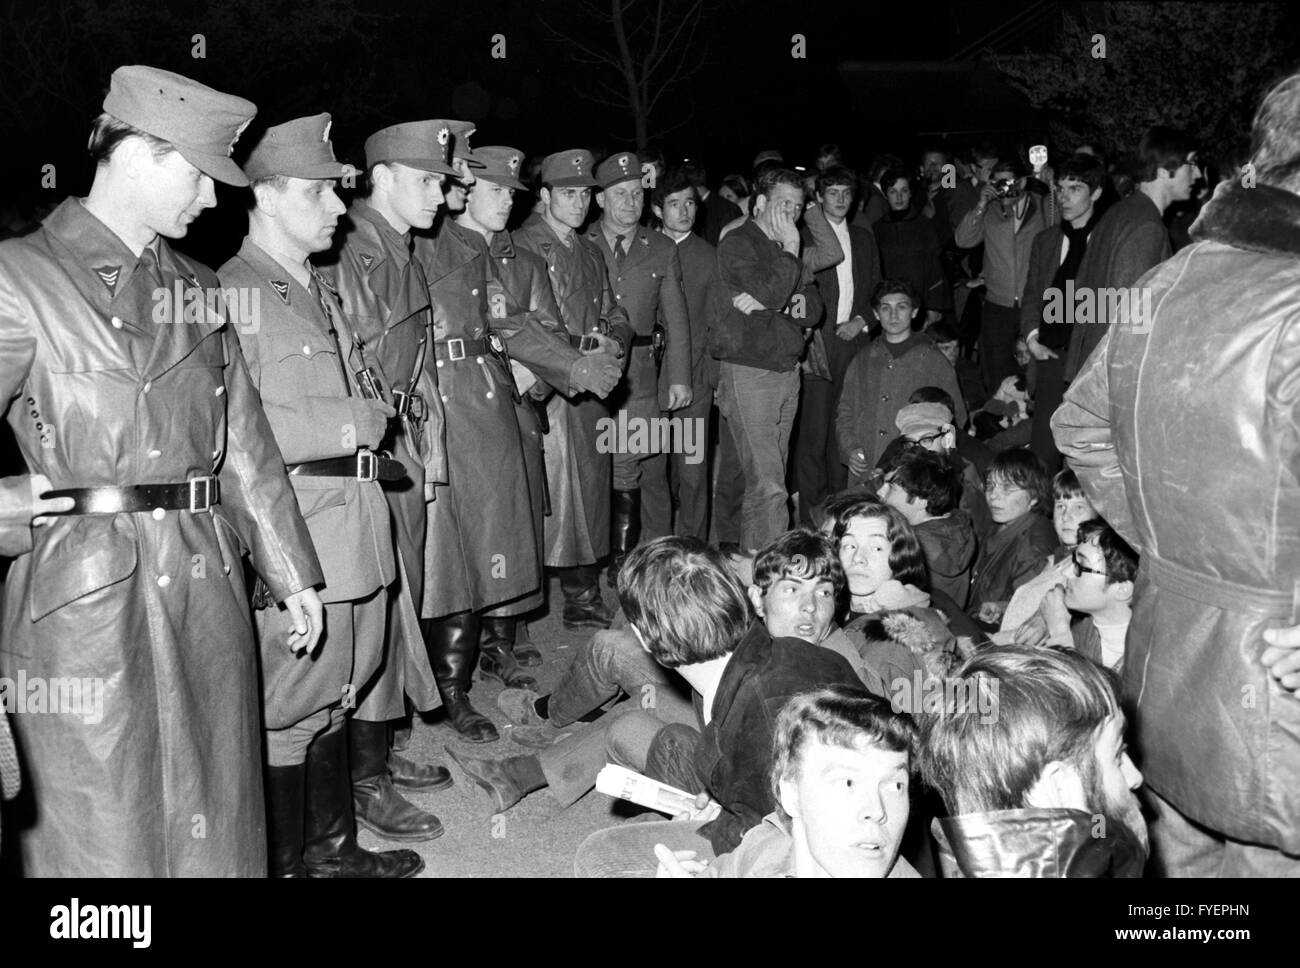 Les participants d'une manifestation le lundi de Pâques essayer de bloquer l'entrée de Springer printing house lors d'un sit-in le 15 avril 1968. Banque D'Images